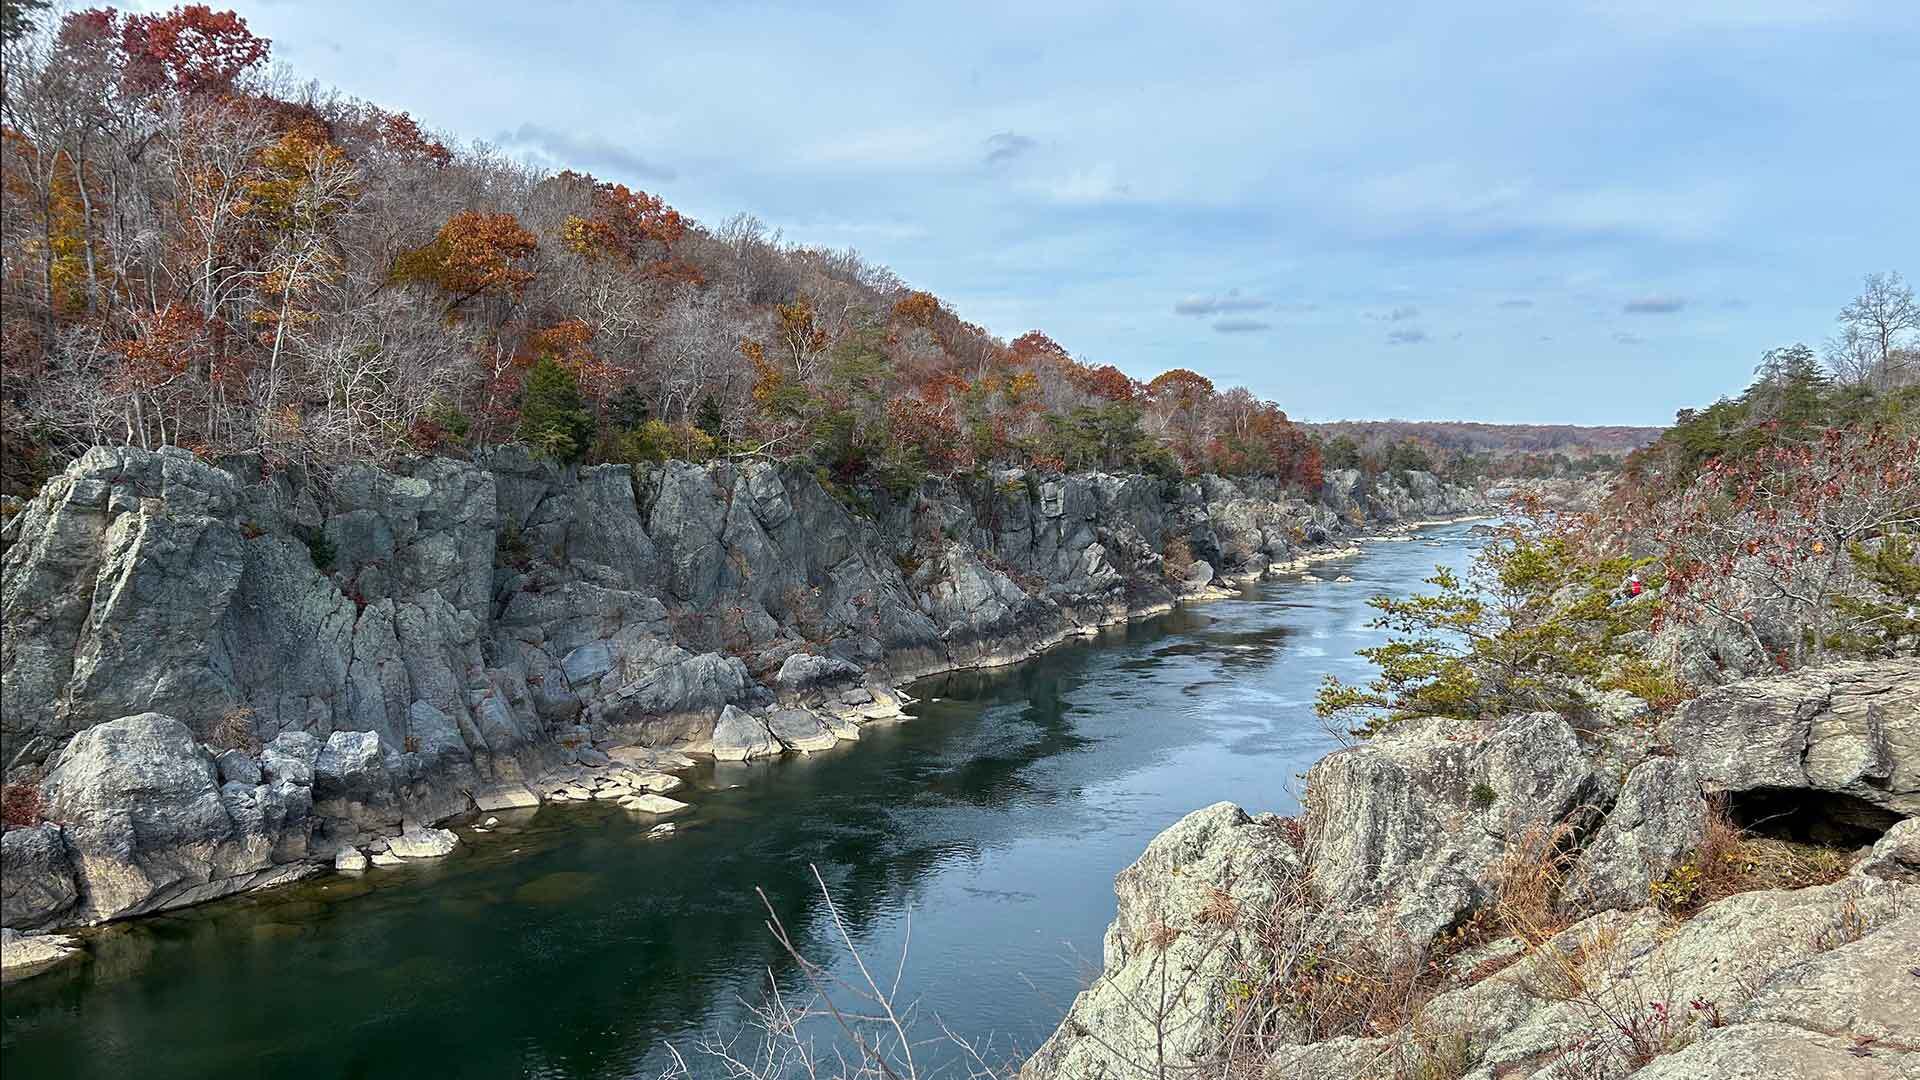 Potomac River